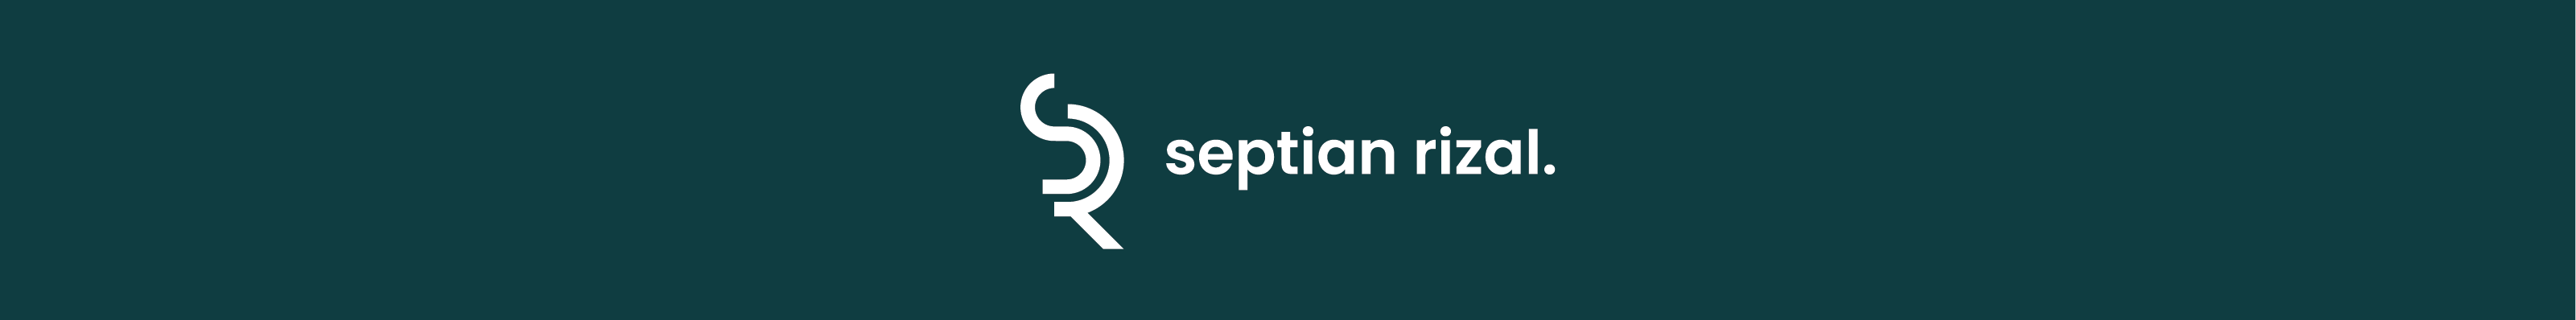 Septian Rizal Dewantara's profile banner